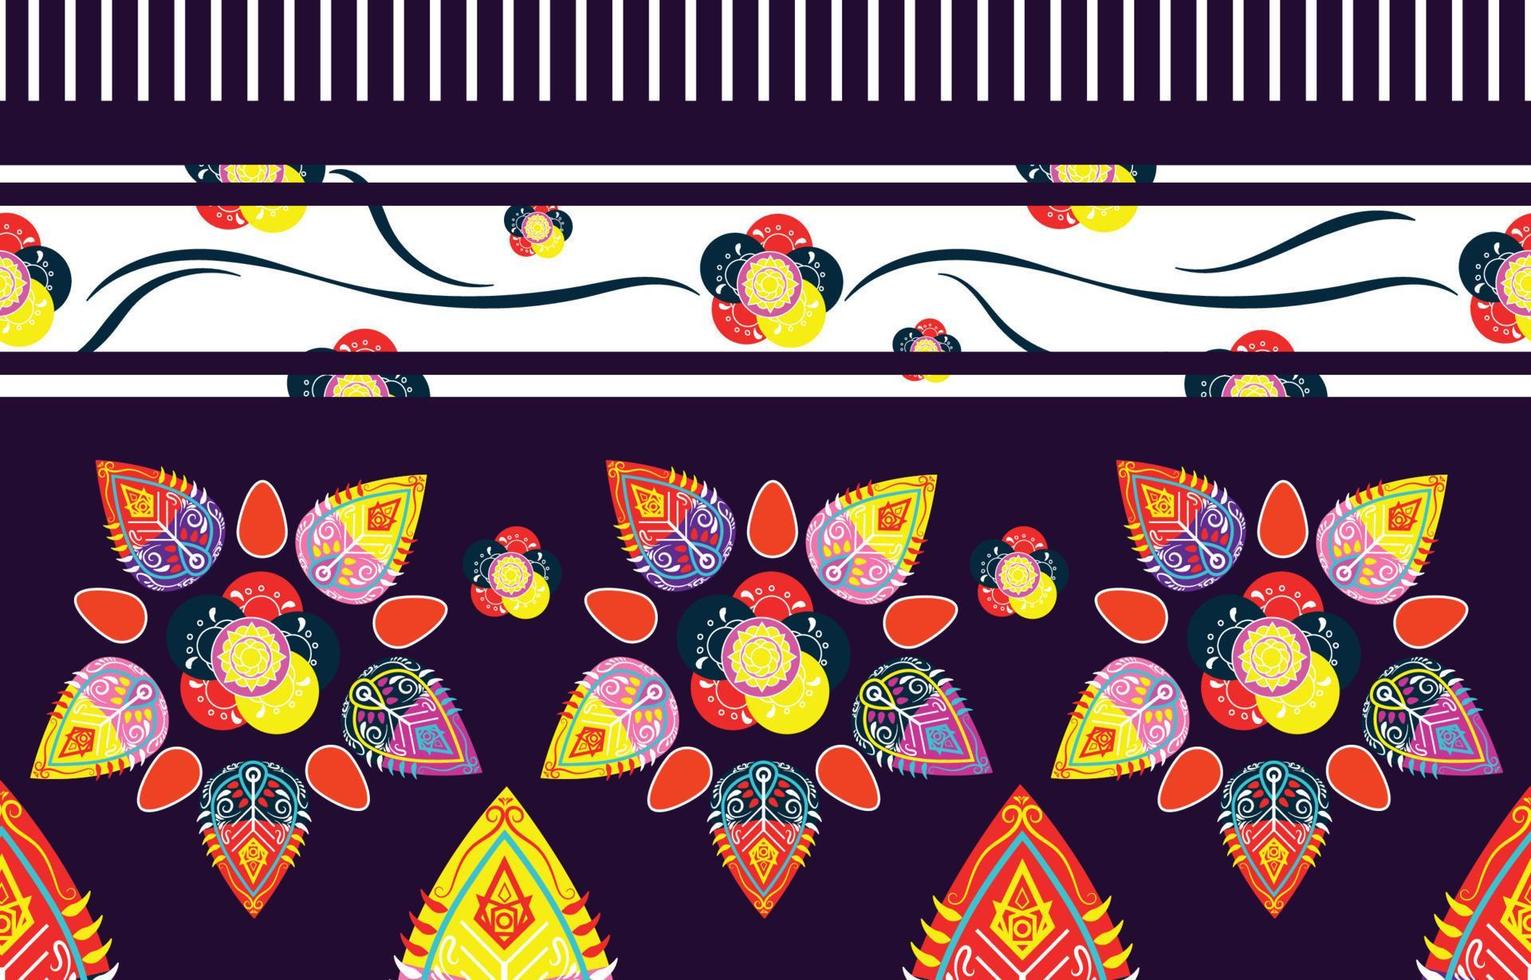 geometrisk etnisk orientalisk ikat sömlös mönster traditionell design för bakgrund, matta, tapeter, kläder, inslagning, batik, tyg, vektor illustration. broderi stil.